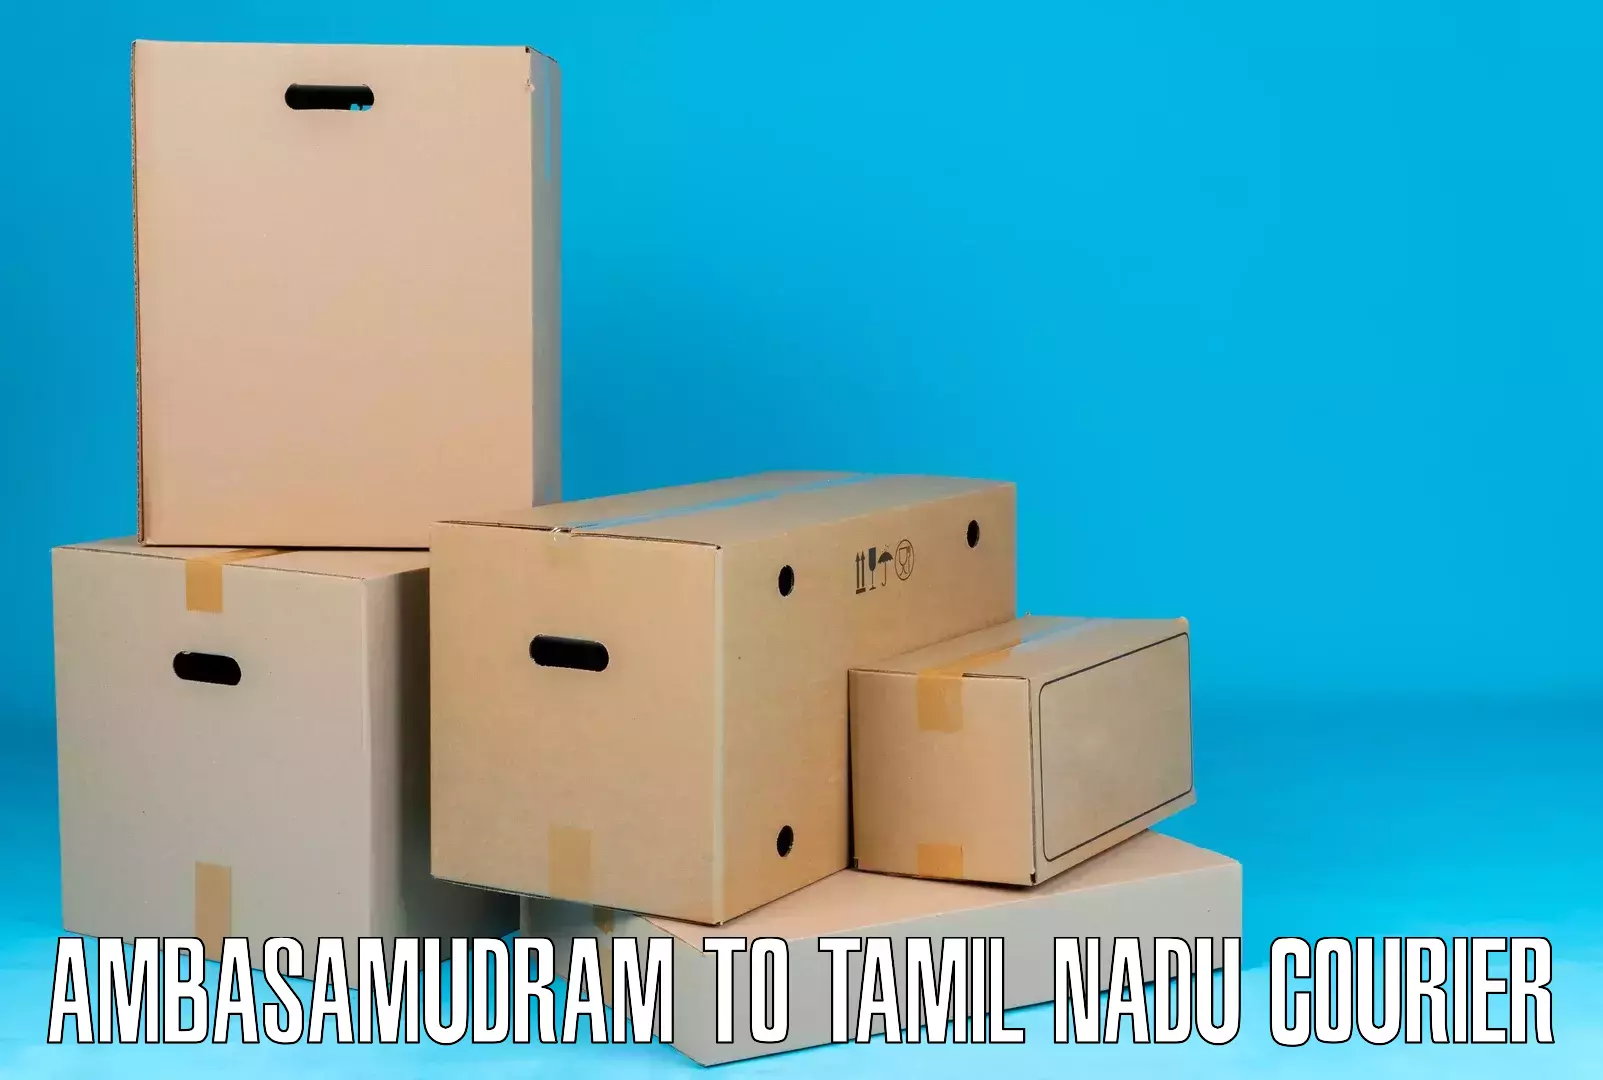 Versatile courier offerings Ambasamudram to Ambasamudram